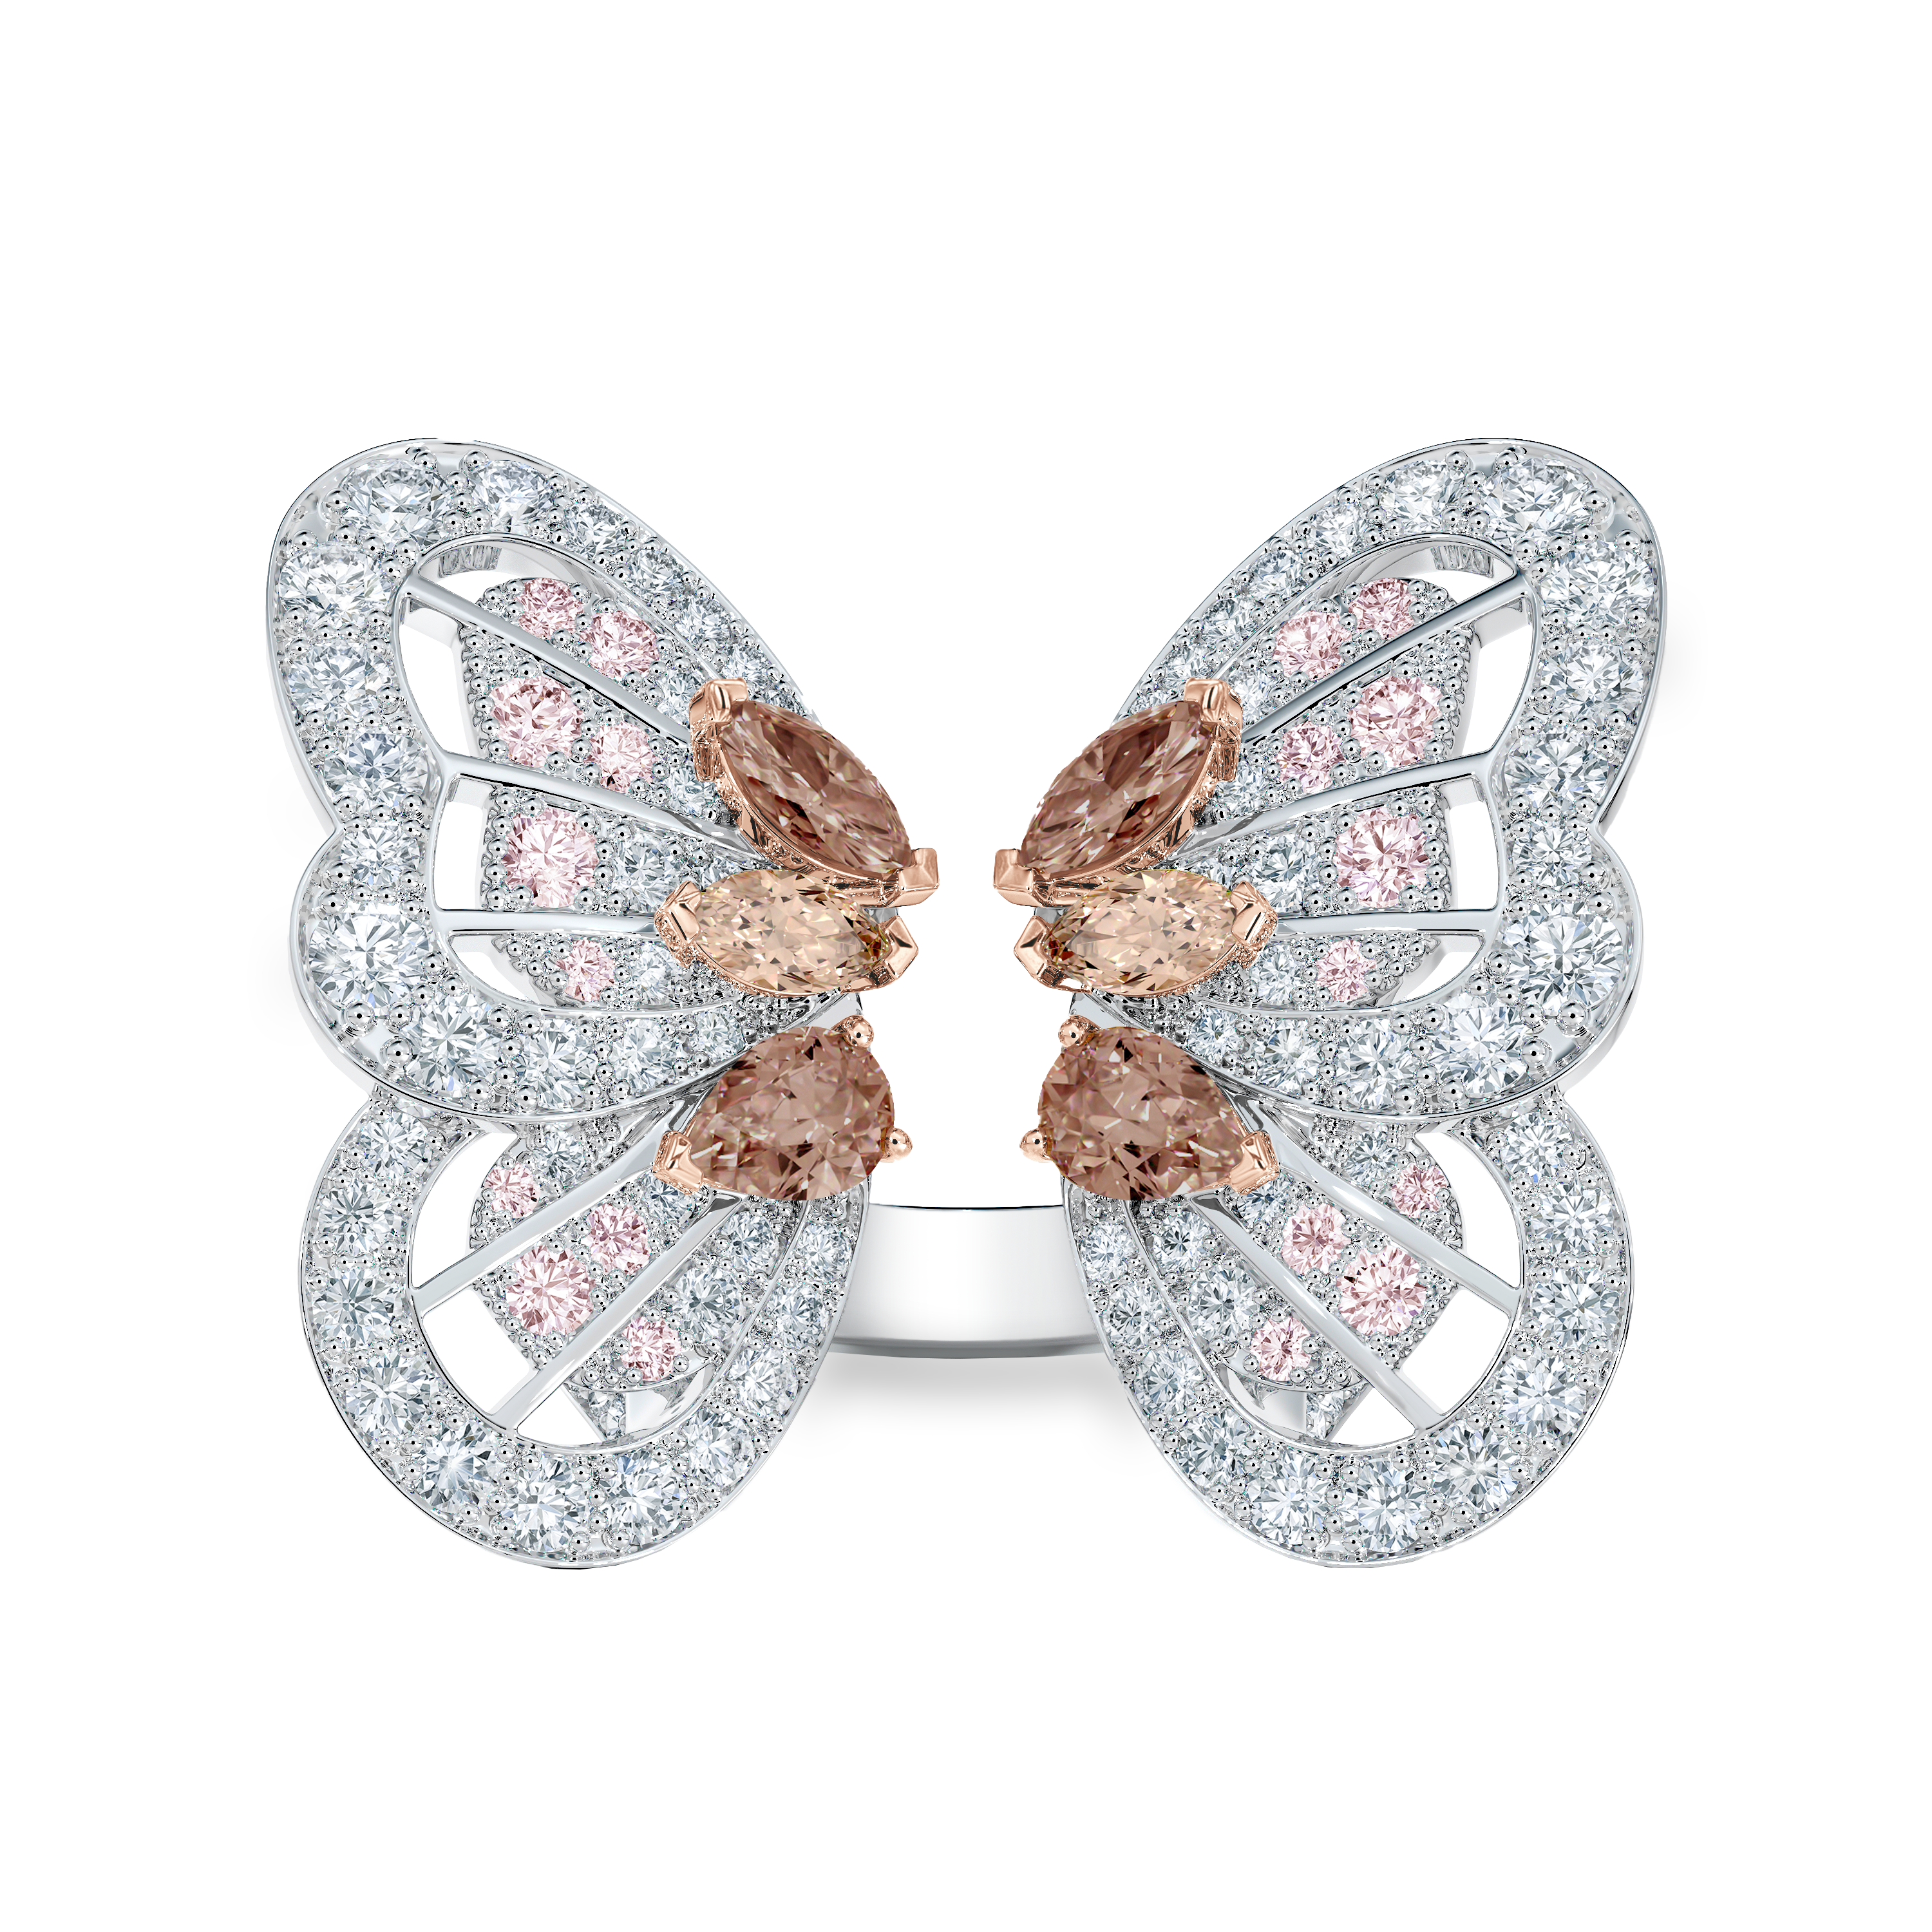 Bague Portraits of Nature butterfly diamants brun rosé, image 1